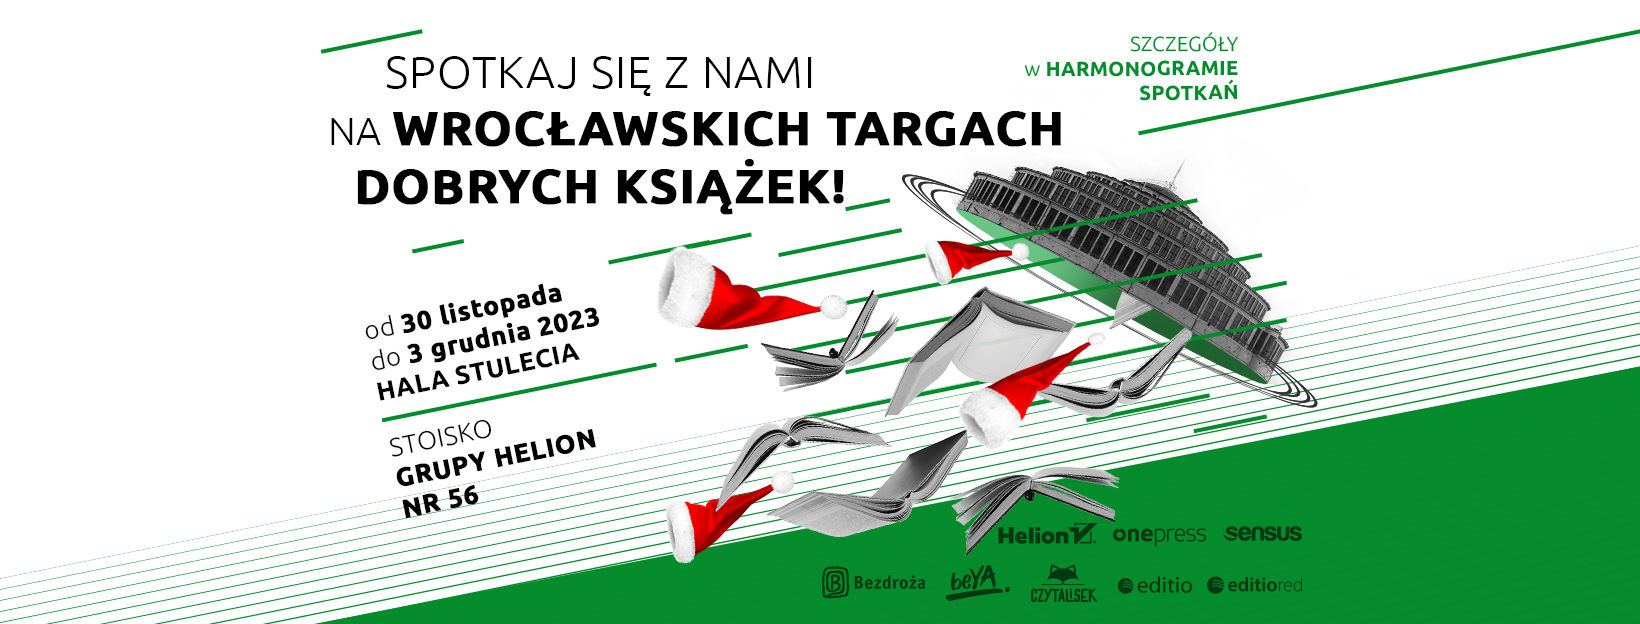 Wrocławskie Targi Dobrych Książek 2023 Stoisko Grupy Helion nr 62